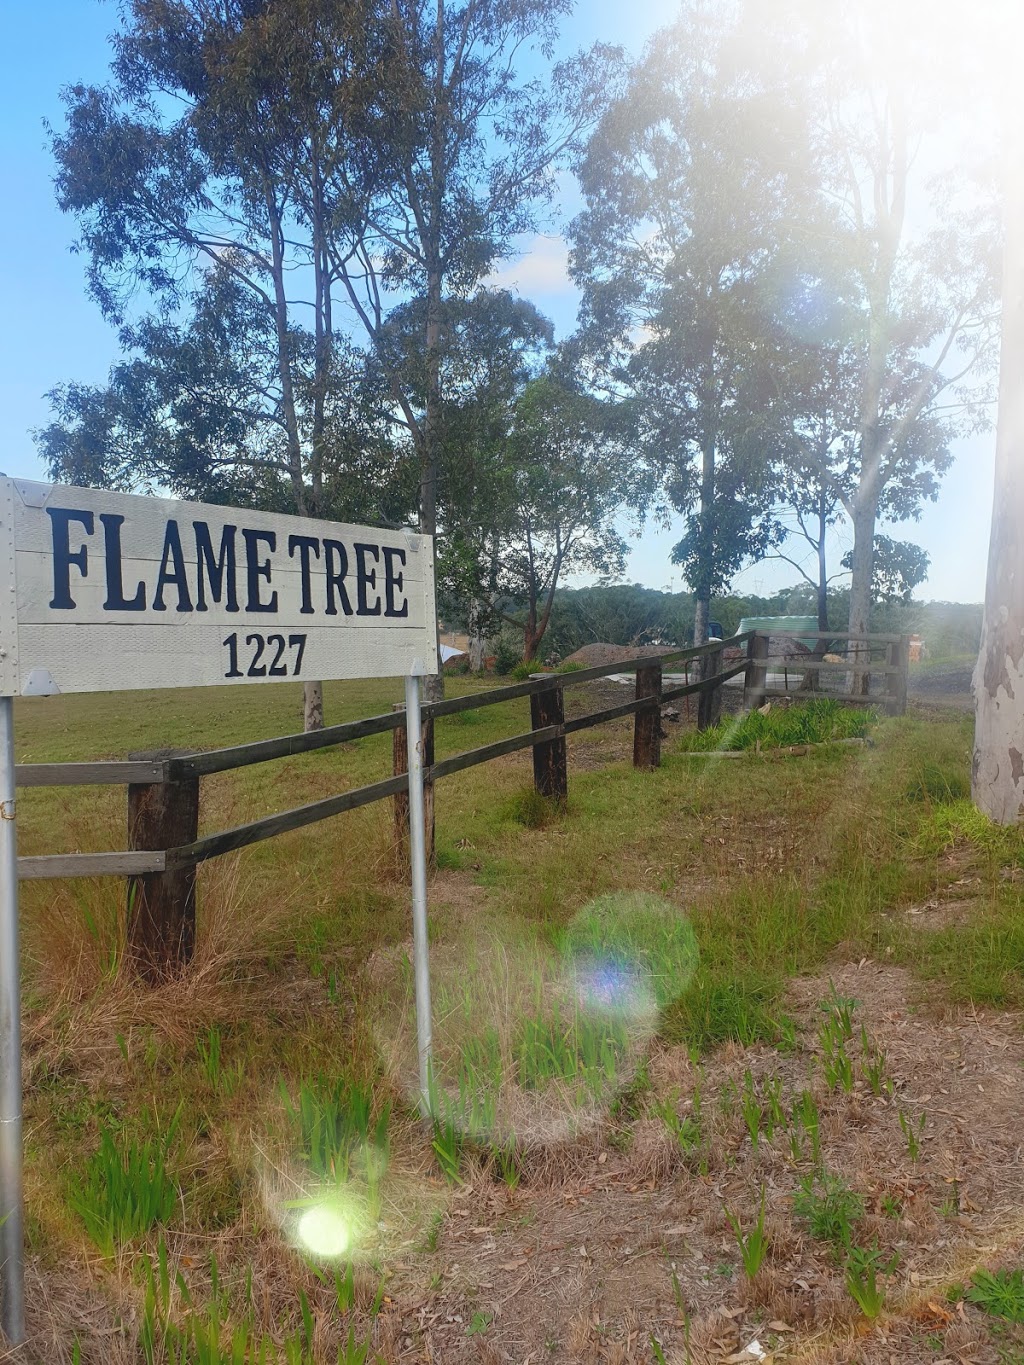 Flame Tree Produce | 1227 Hue Hue Rd, Wyee NSW 2259, Australia | Phone: 0449 843 482